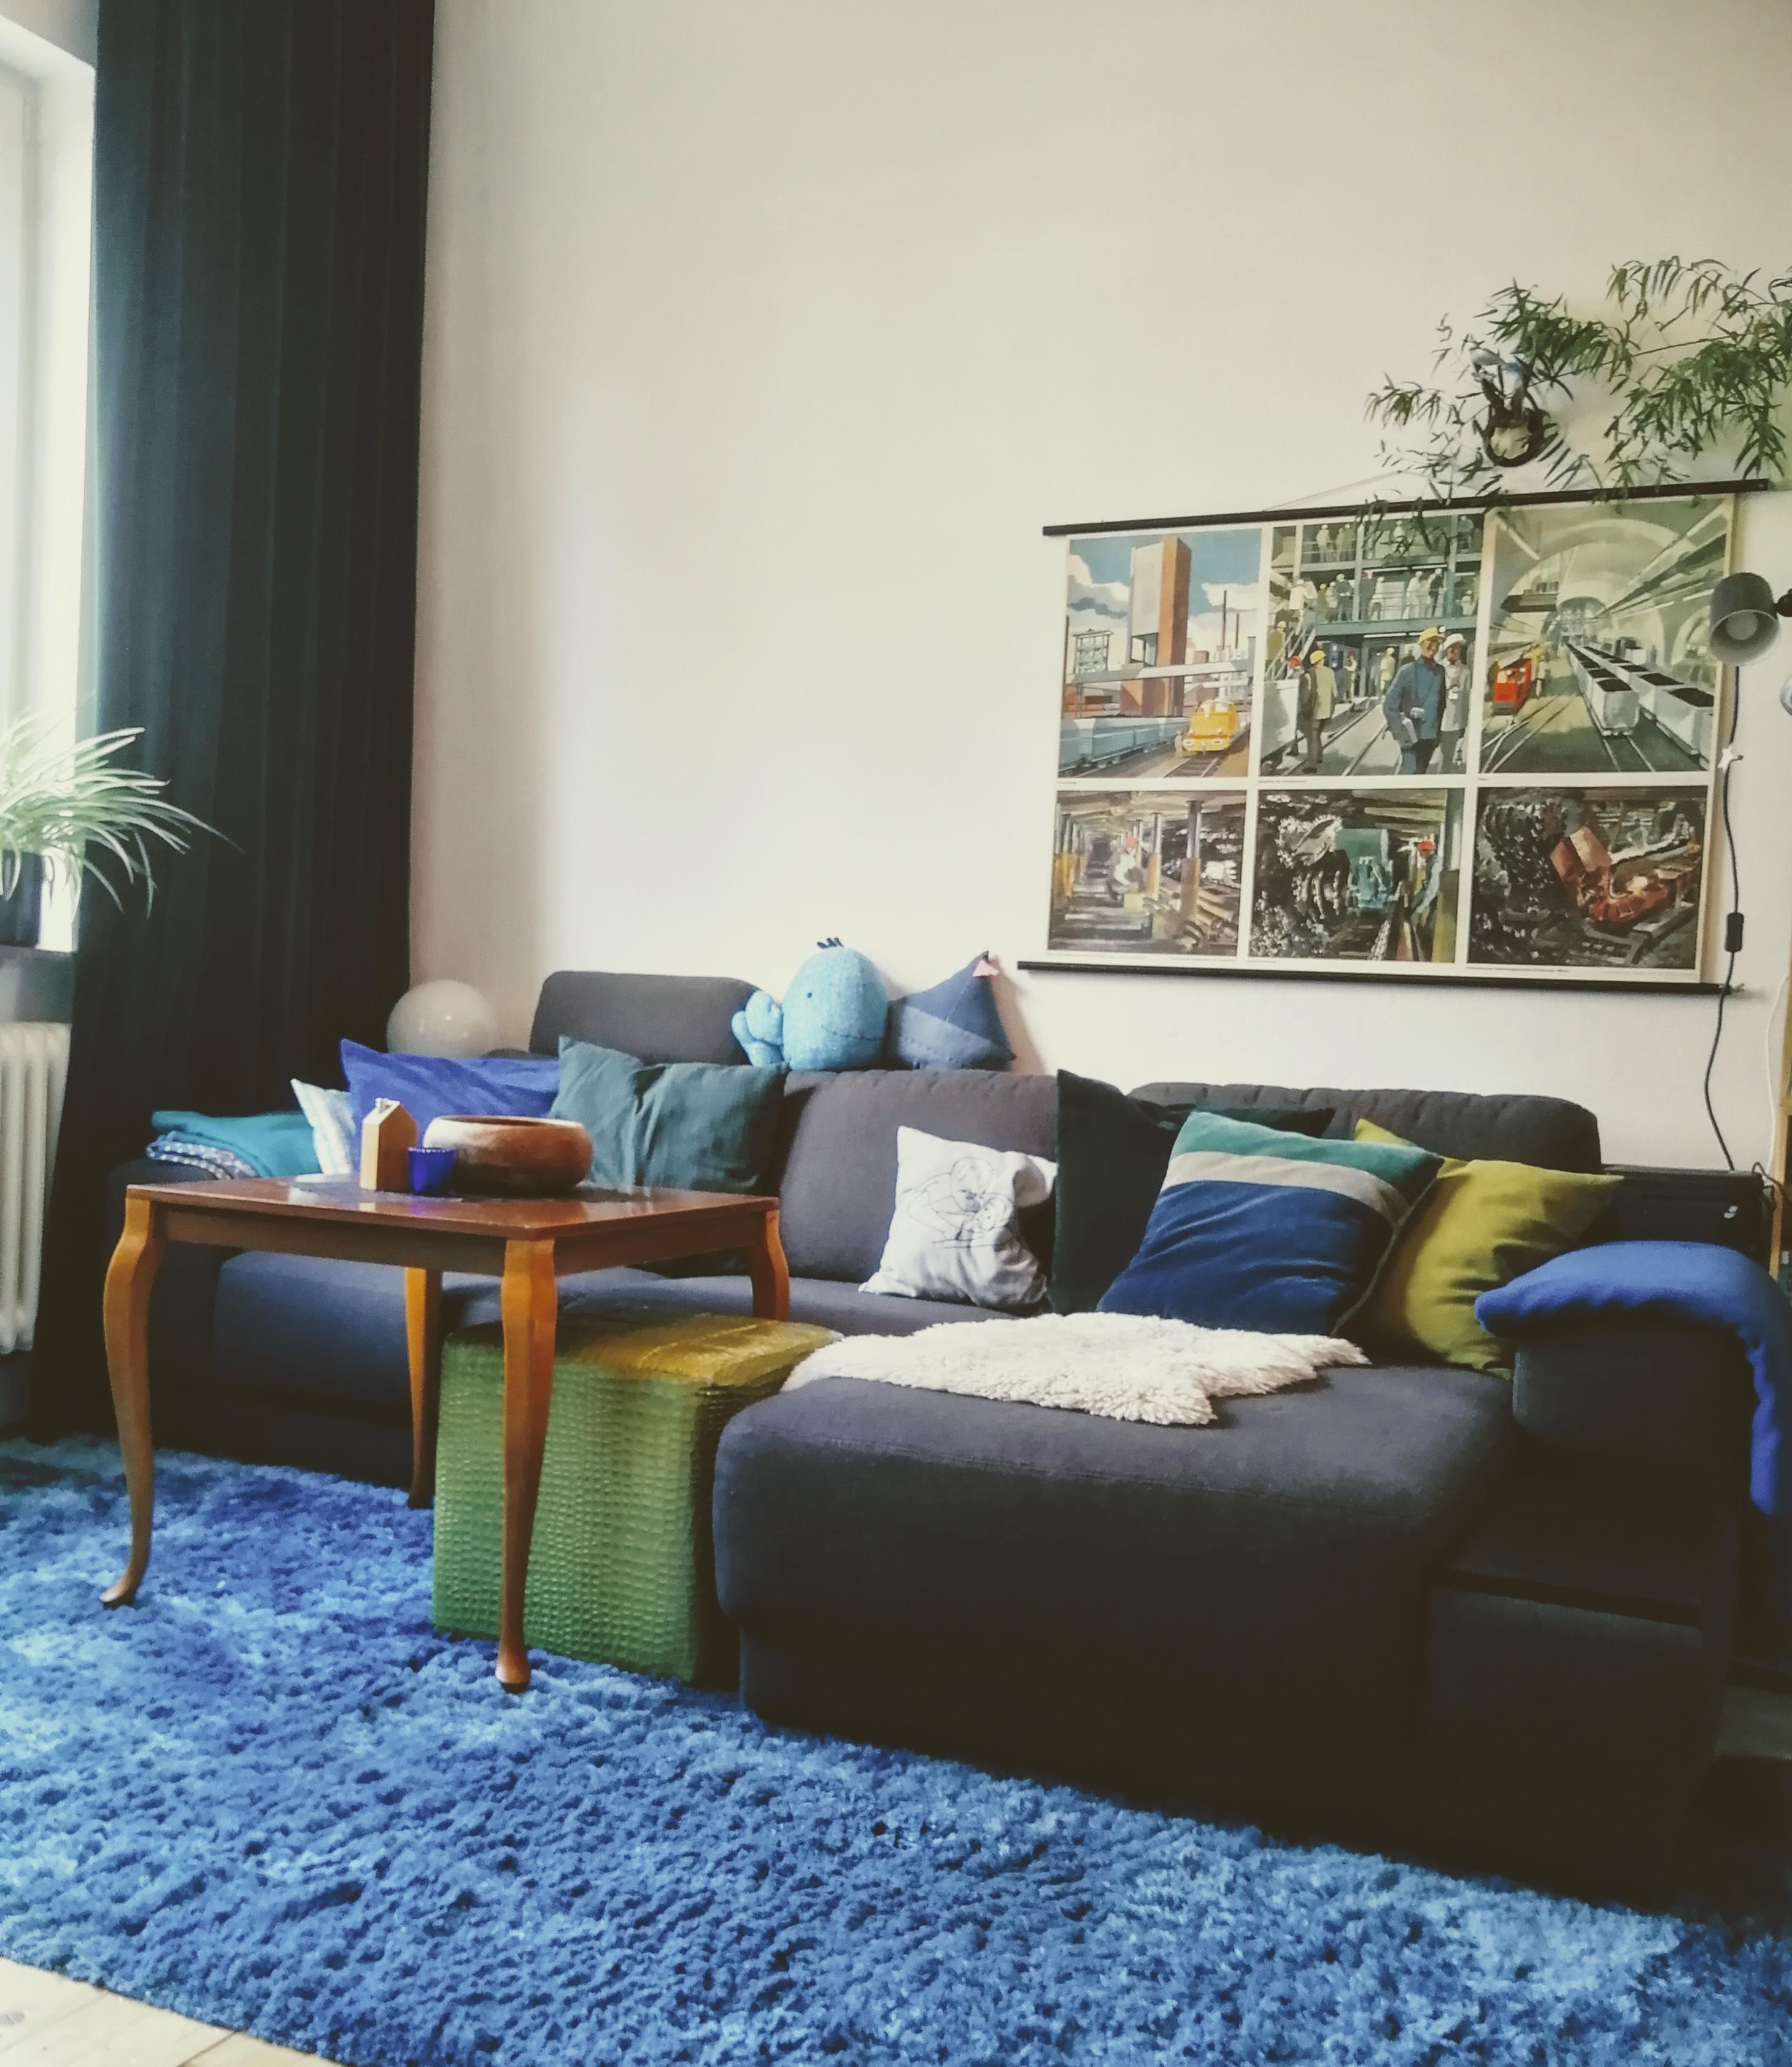 Irgendwann muss mal'n schickeres #sofa her. Bis dahin sieht das #wohnzimmer so aus... #livingchallenge #colourful 